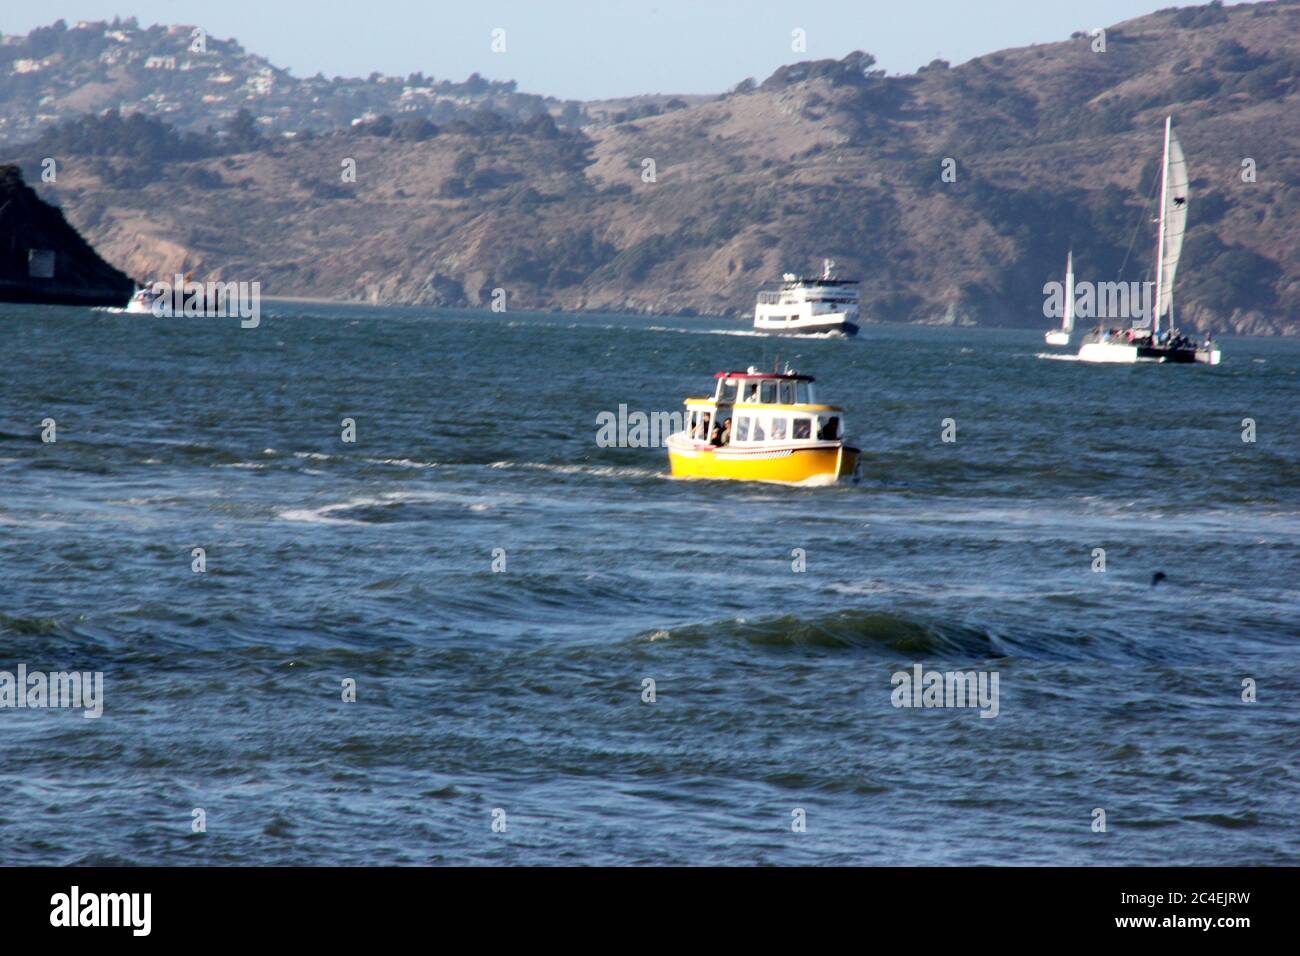 San Francisco Bay area in California, USA Stock Photo